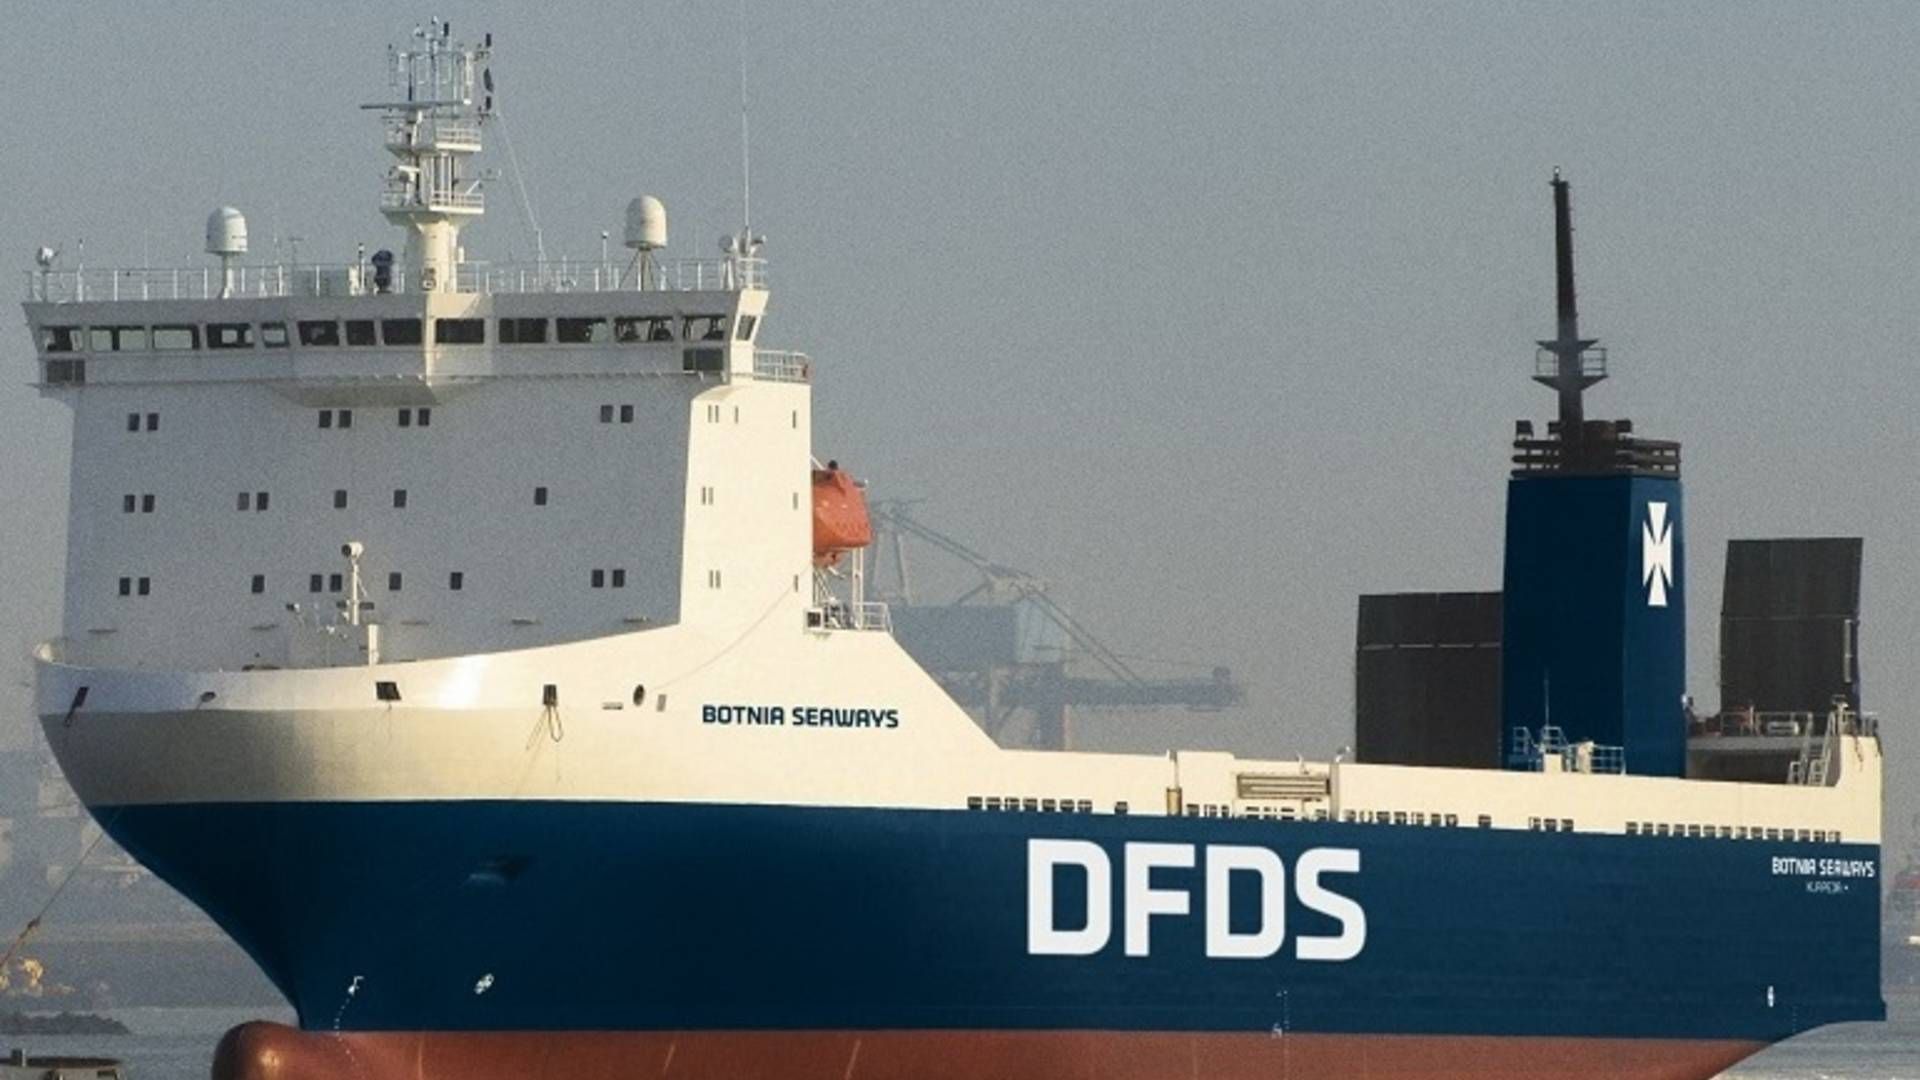 Det er DFDS-roro færgen Botnia Seaways der skal fragte uledsaget fragt. | Foto: PR-FOTO